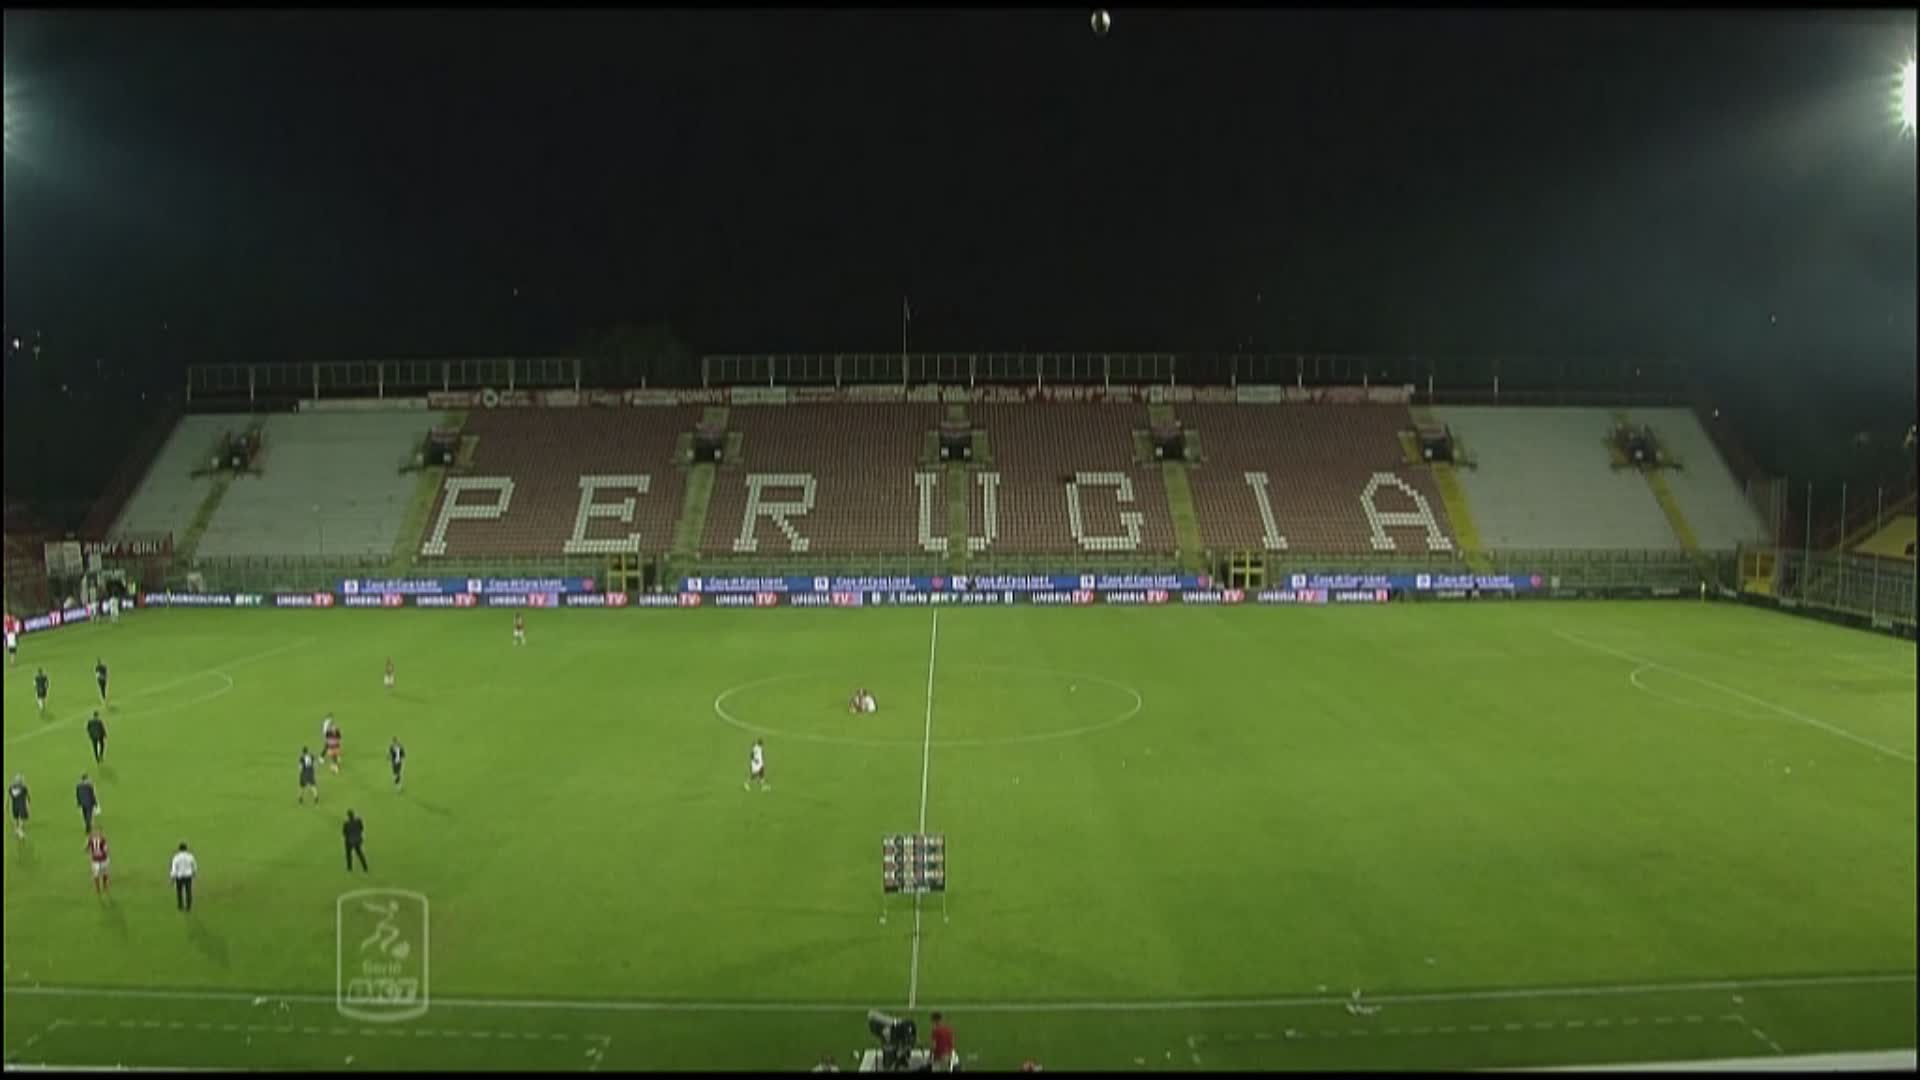 Serie C, confermati i gironi: Perugia con il Gubbio, Ternana al sud